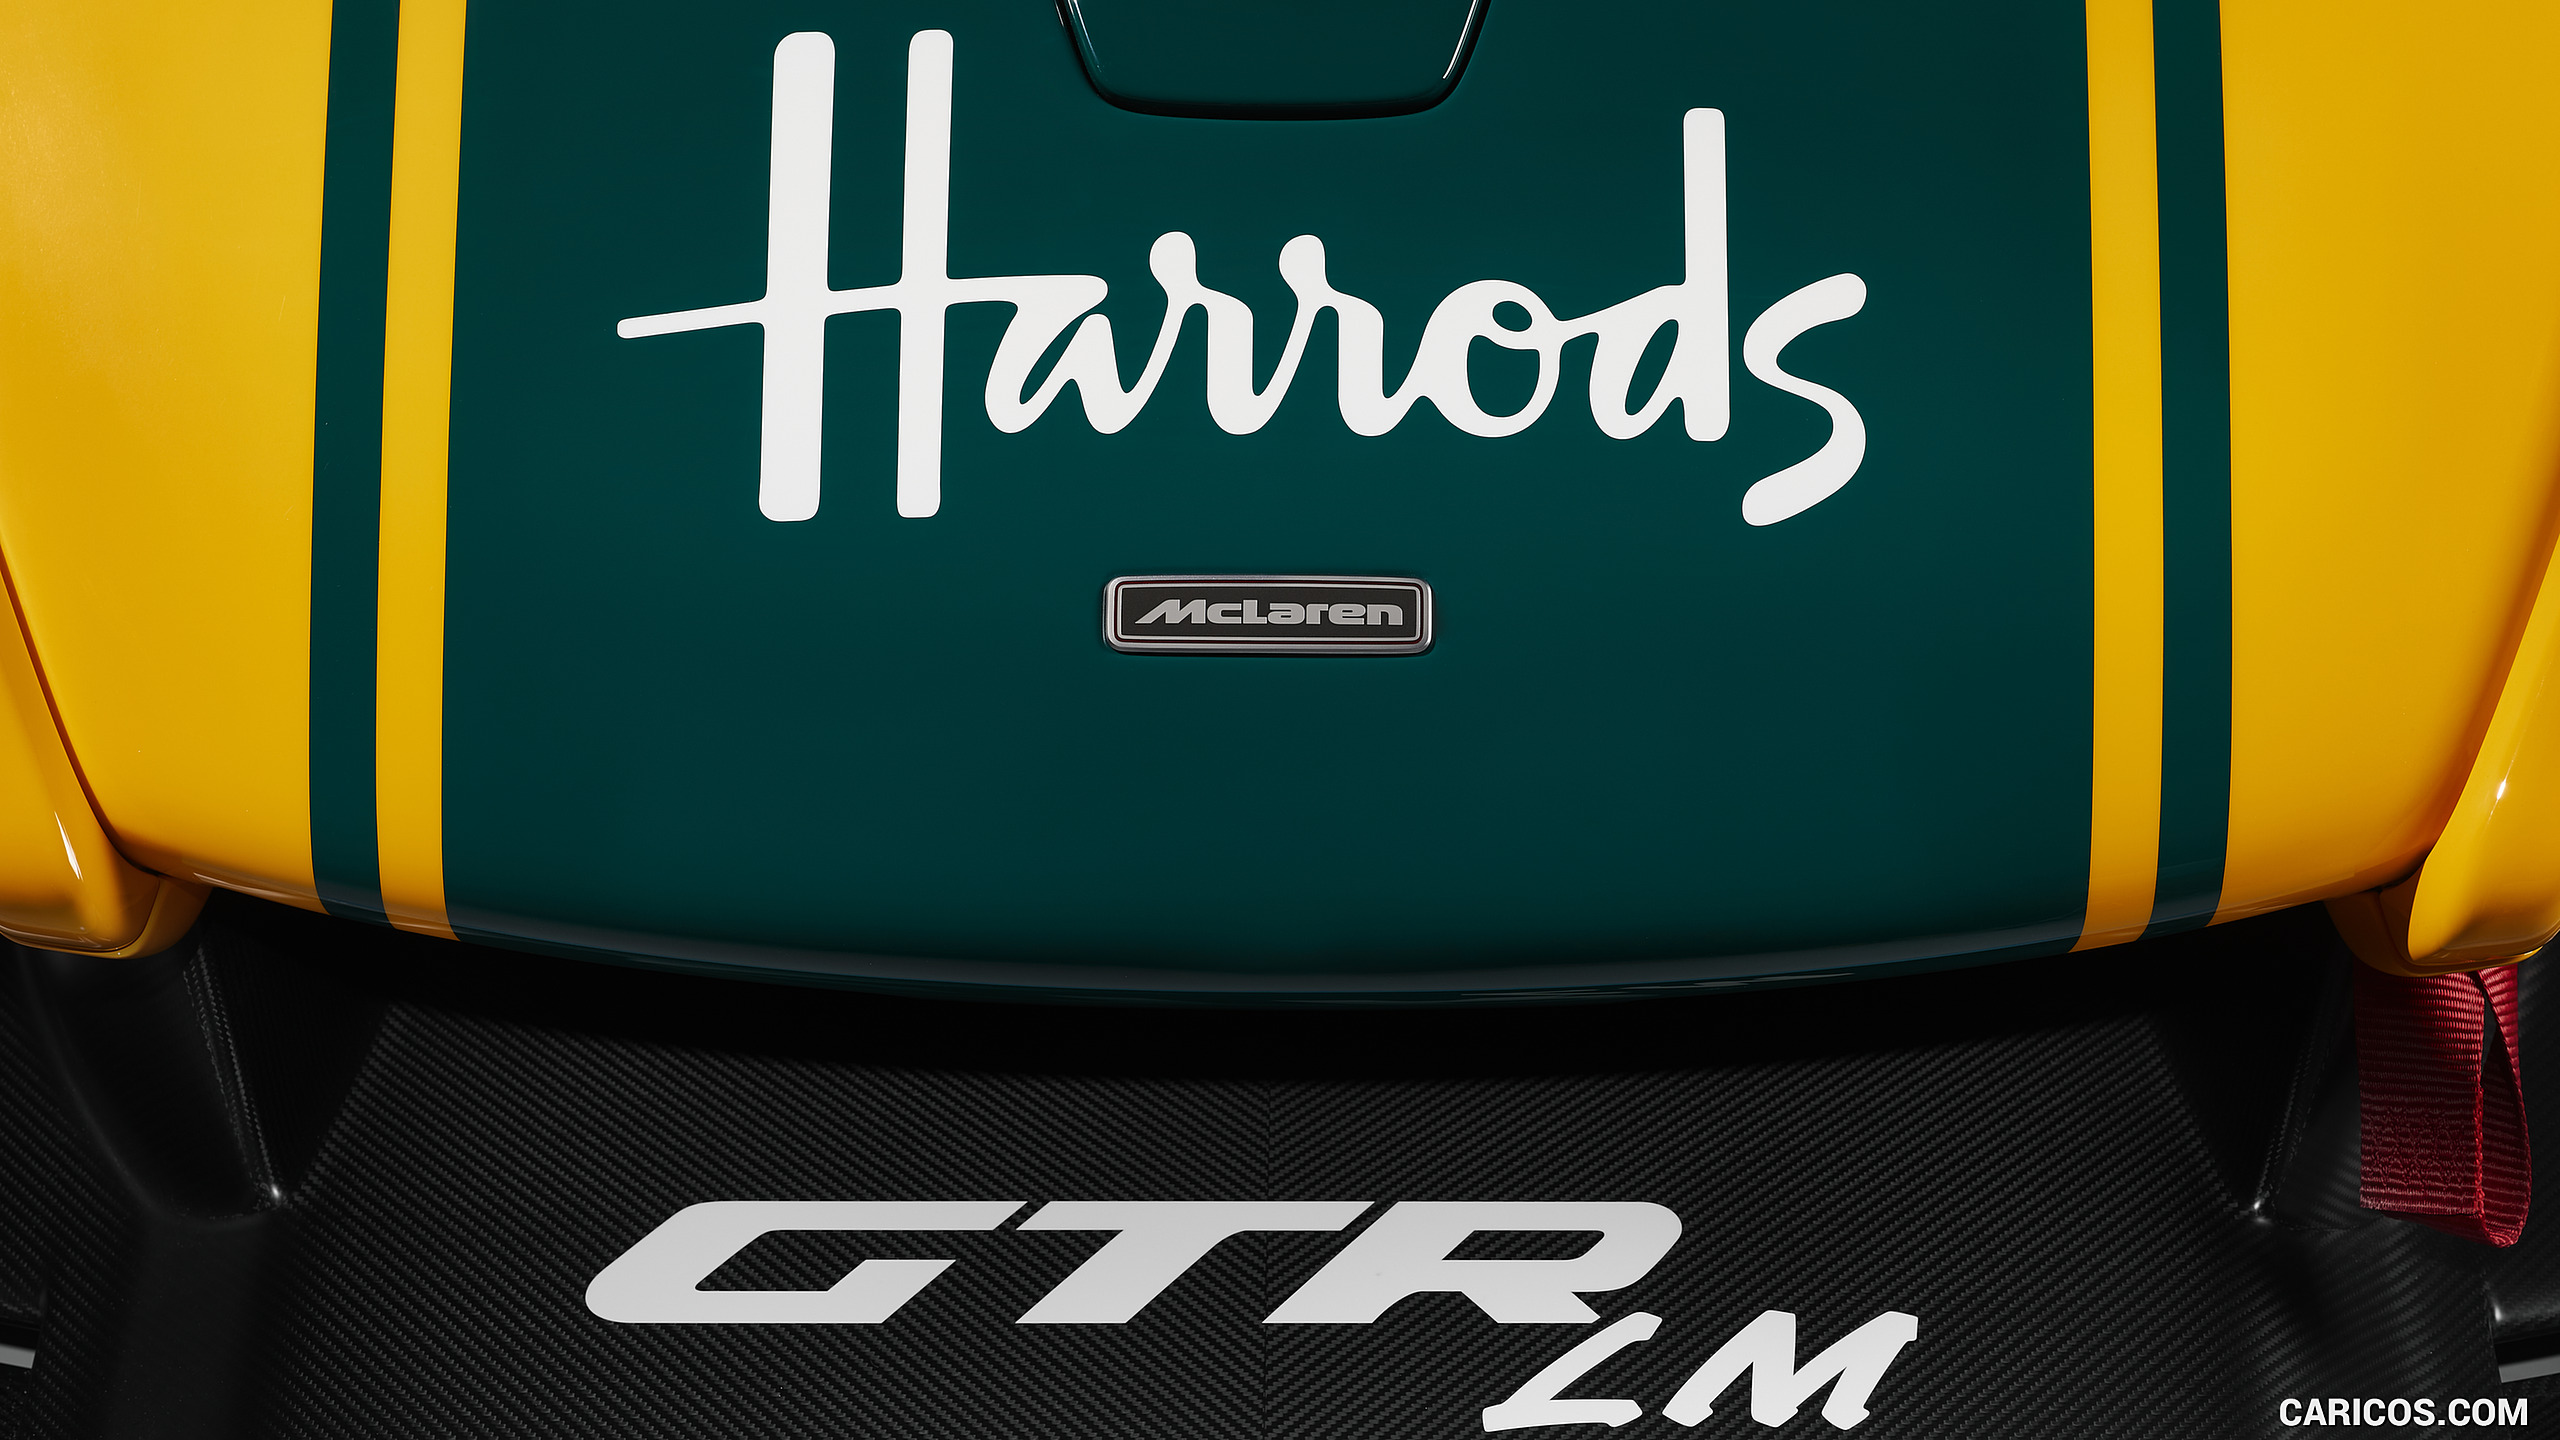 2020 McLaren Senna GTR LM Harrods - Detail, #30 of 41